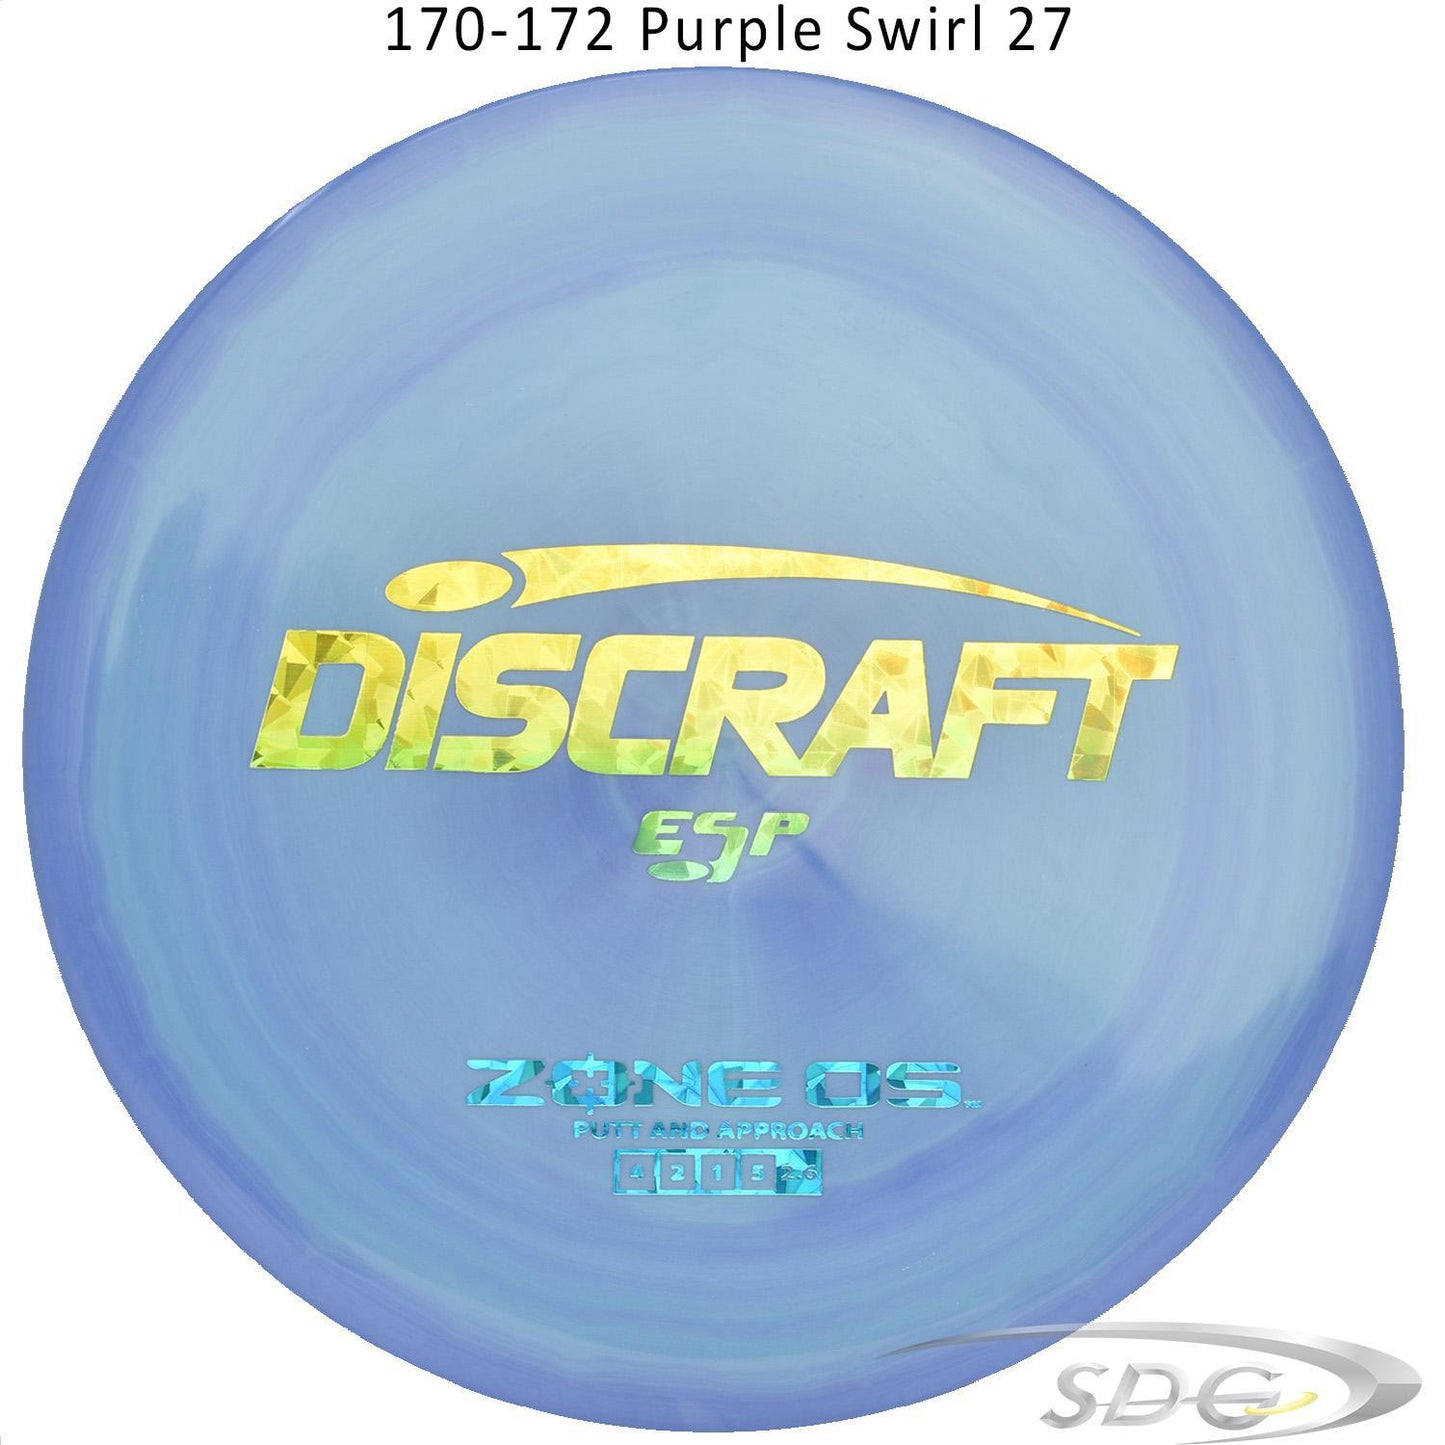 discraft-esp-zone-os-disc-golf-putter 170-172 Purple Swirl 27 